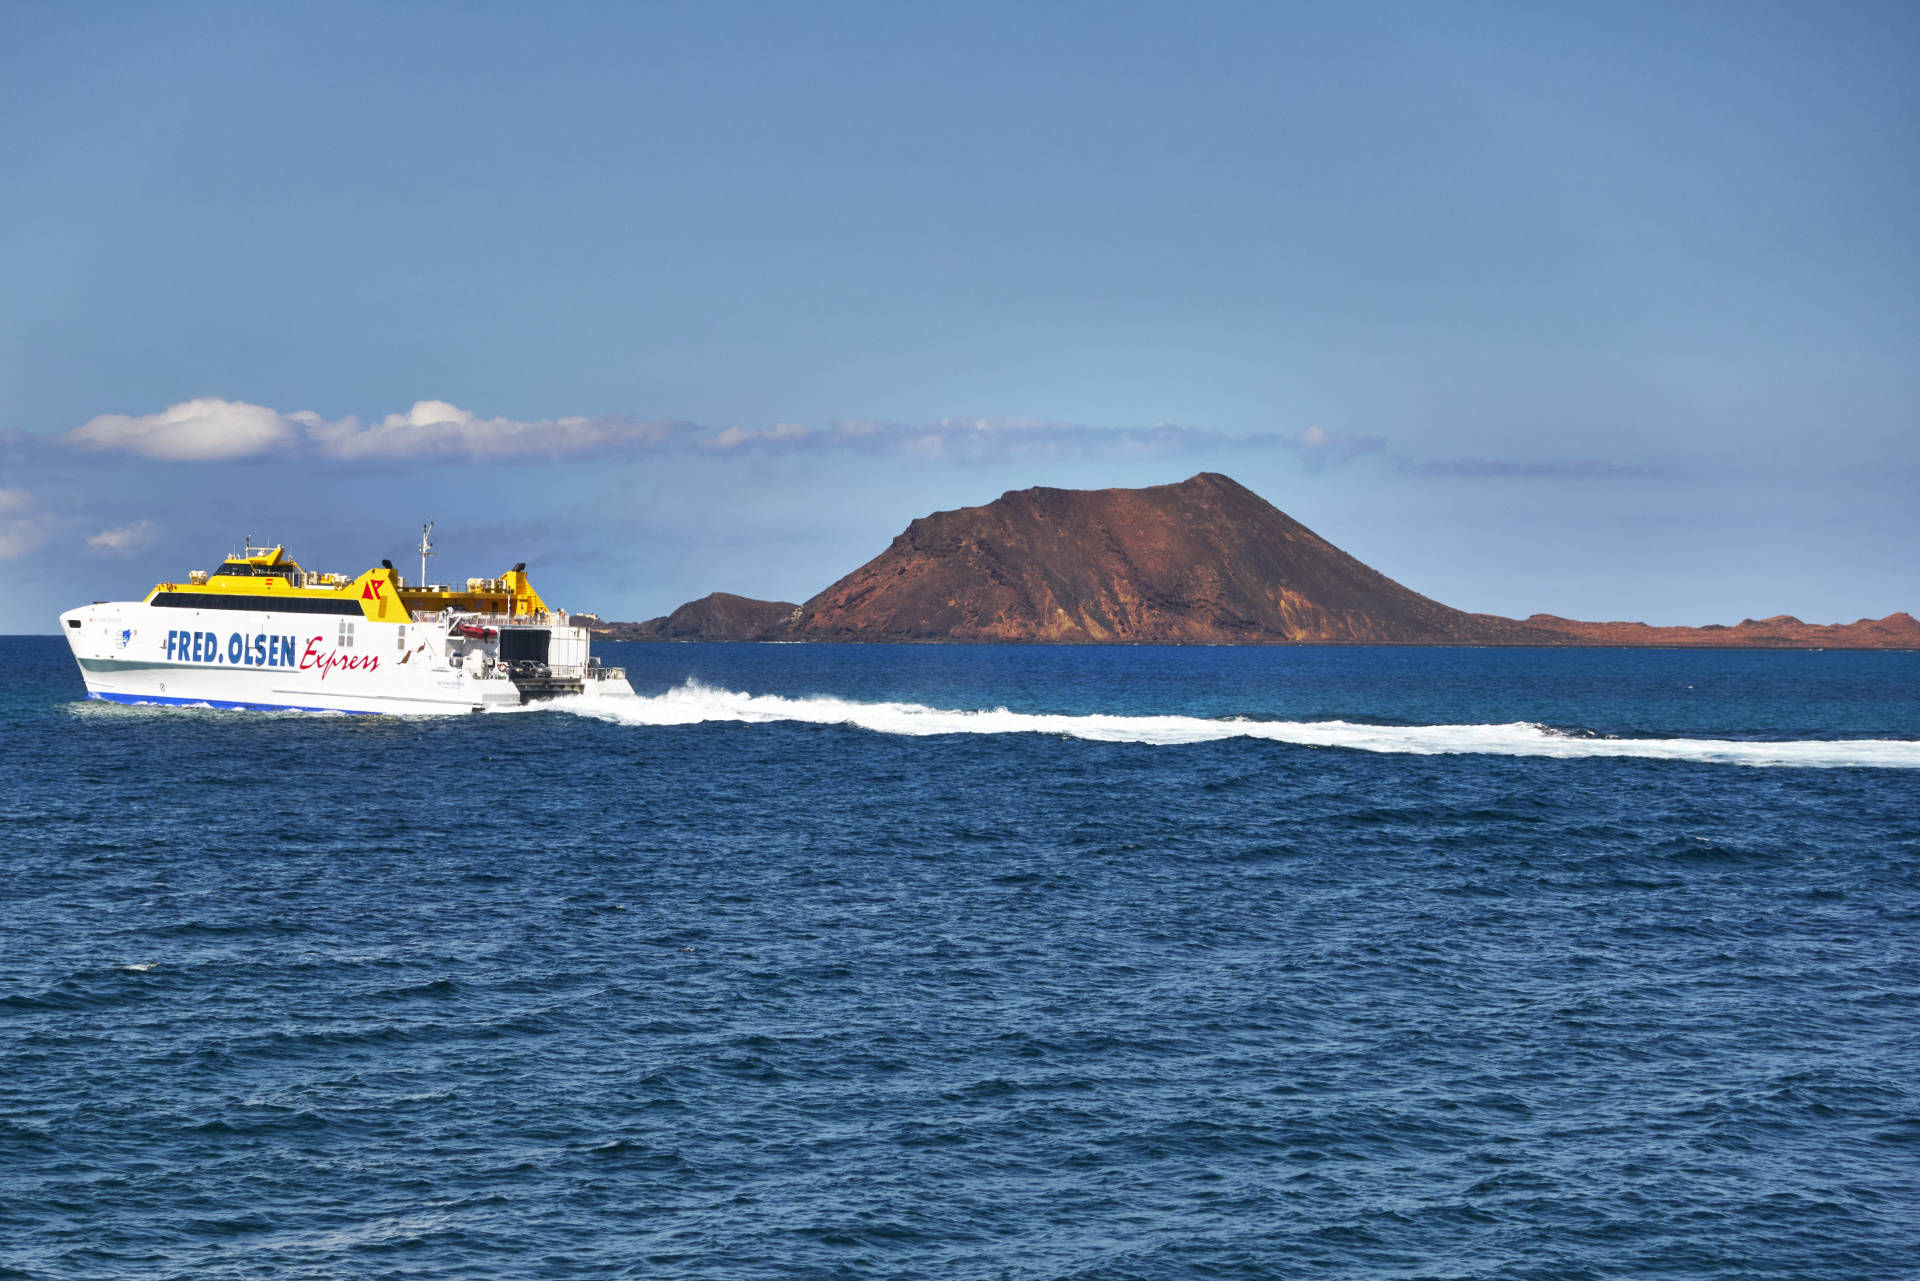 Isla de Lobos Fuerteventura von Corralejo aus gesehen.